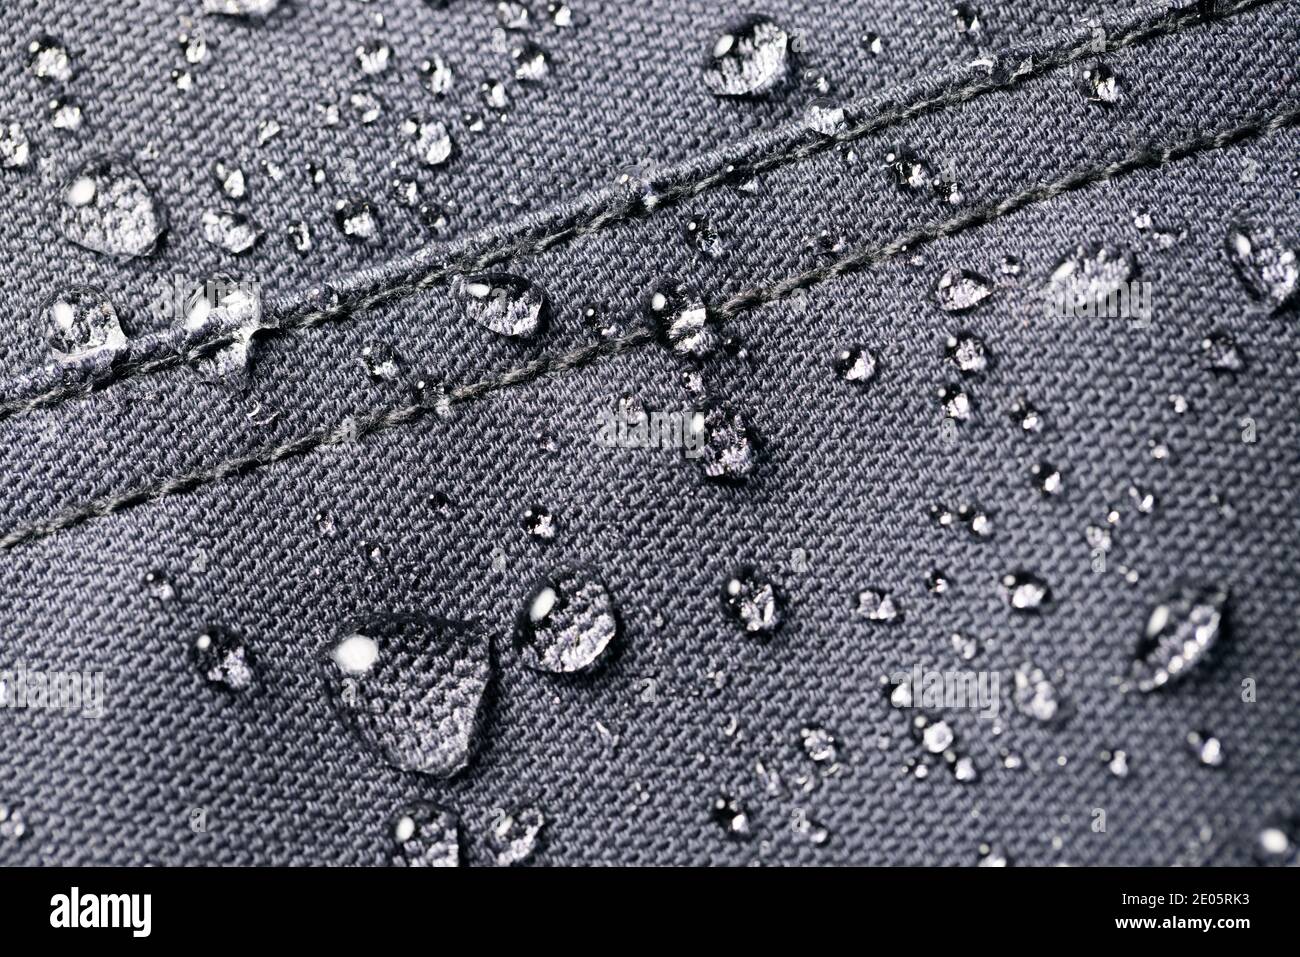 Waterproof fabric immagini e fotografie stock ad alta risoluzione - Alamy